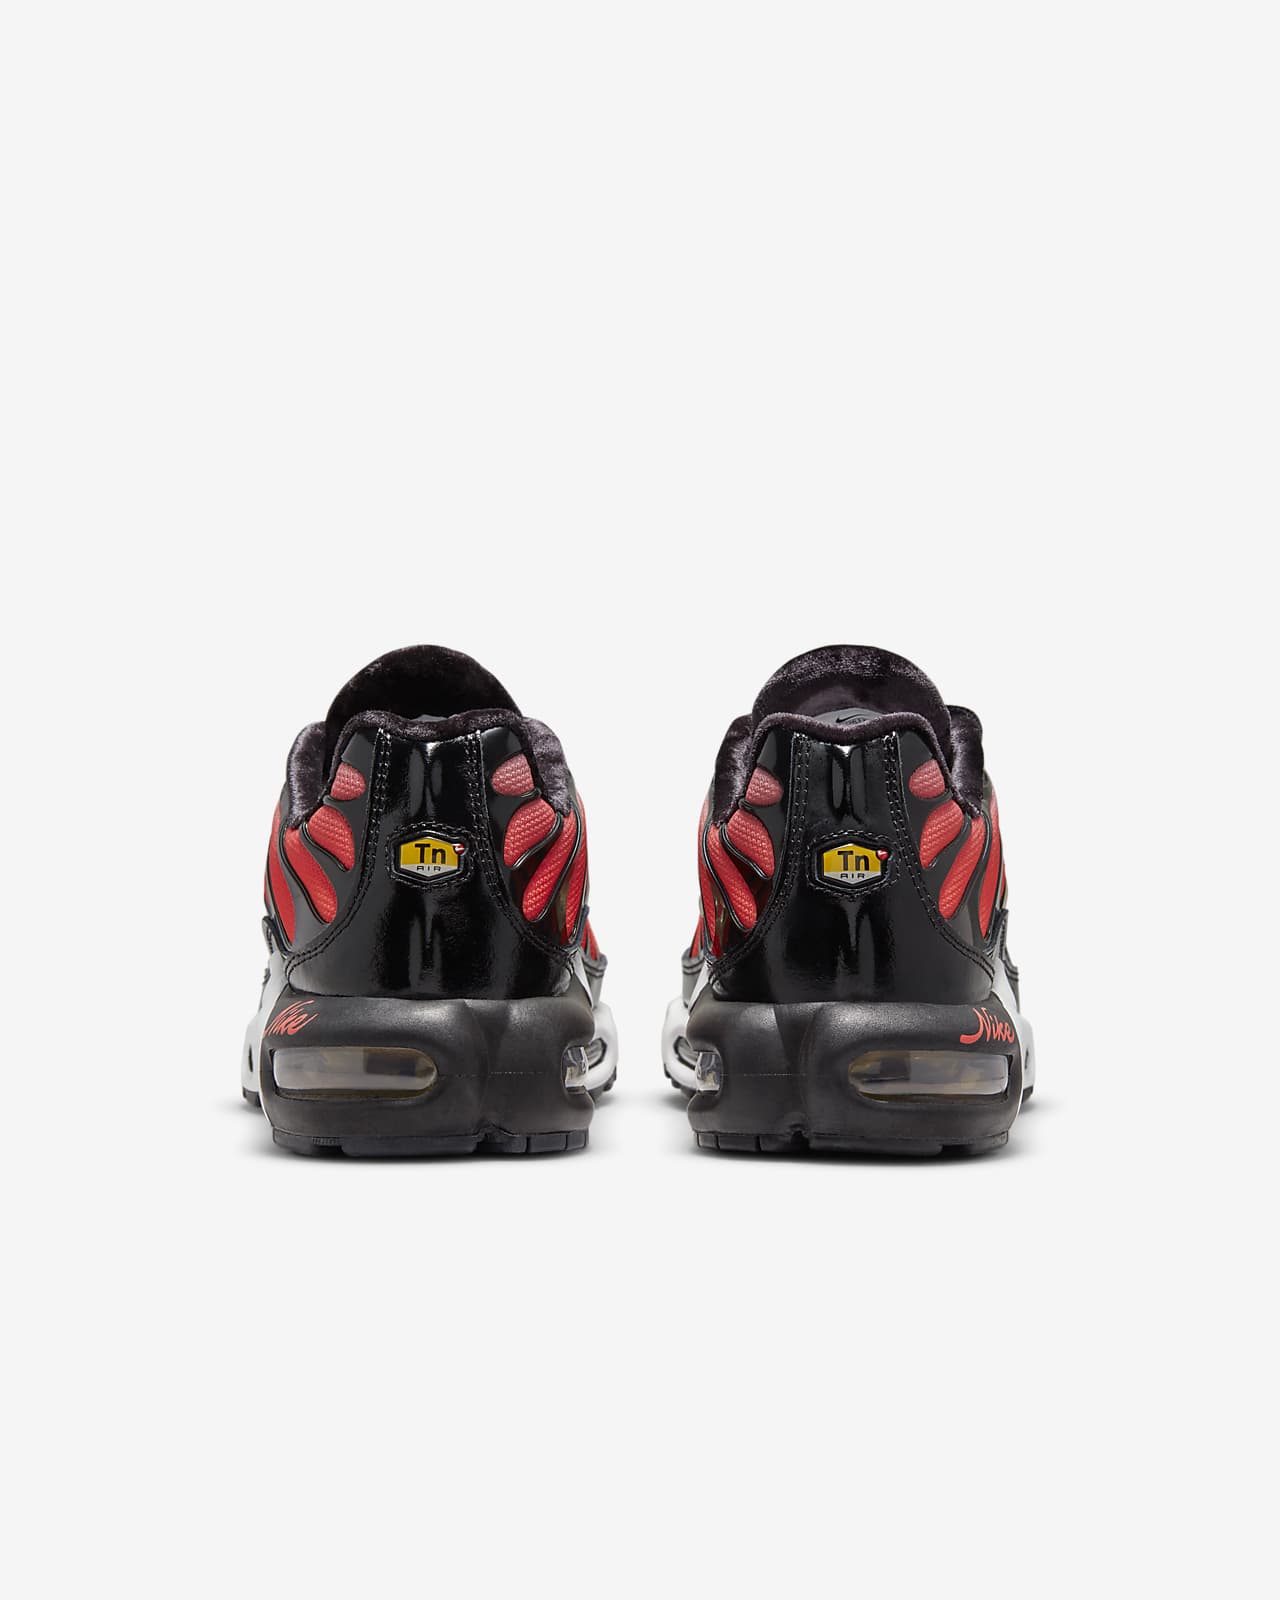 Nike Air Max Plus Women's Shoes صديق سبونج بوب